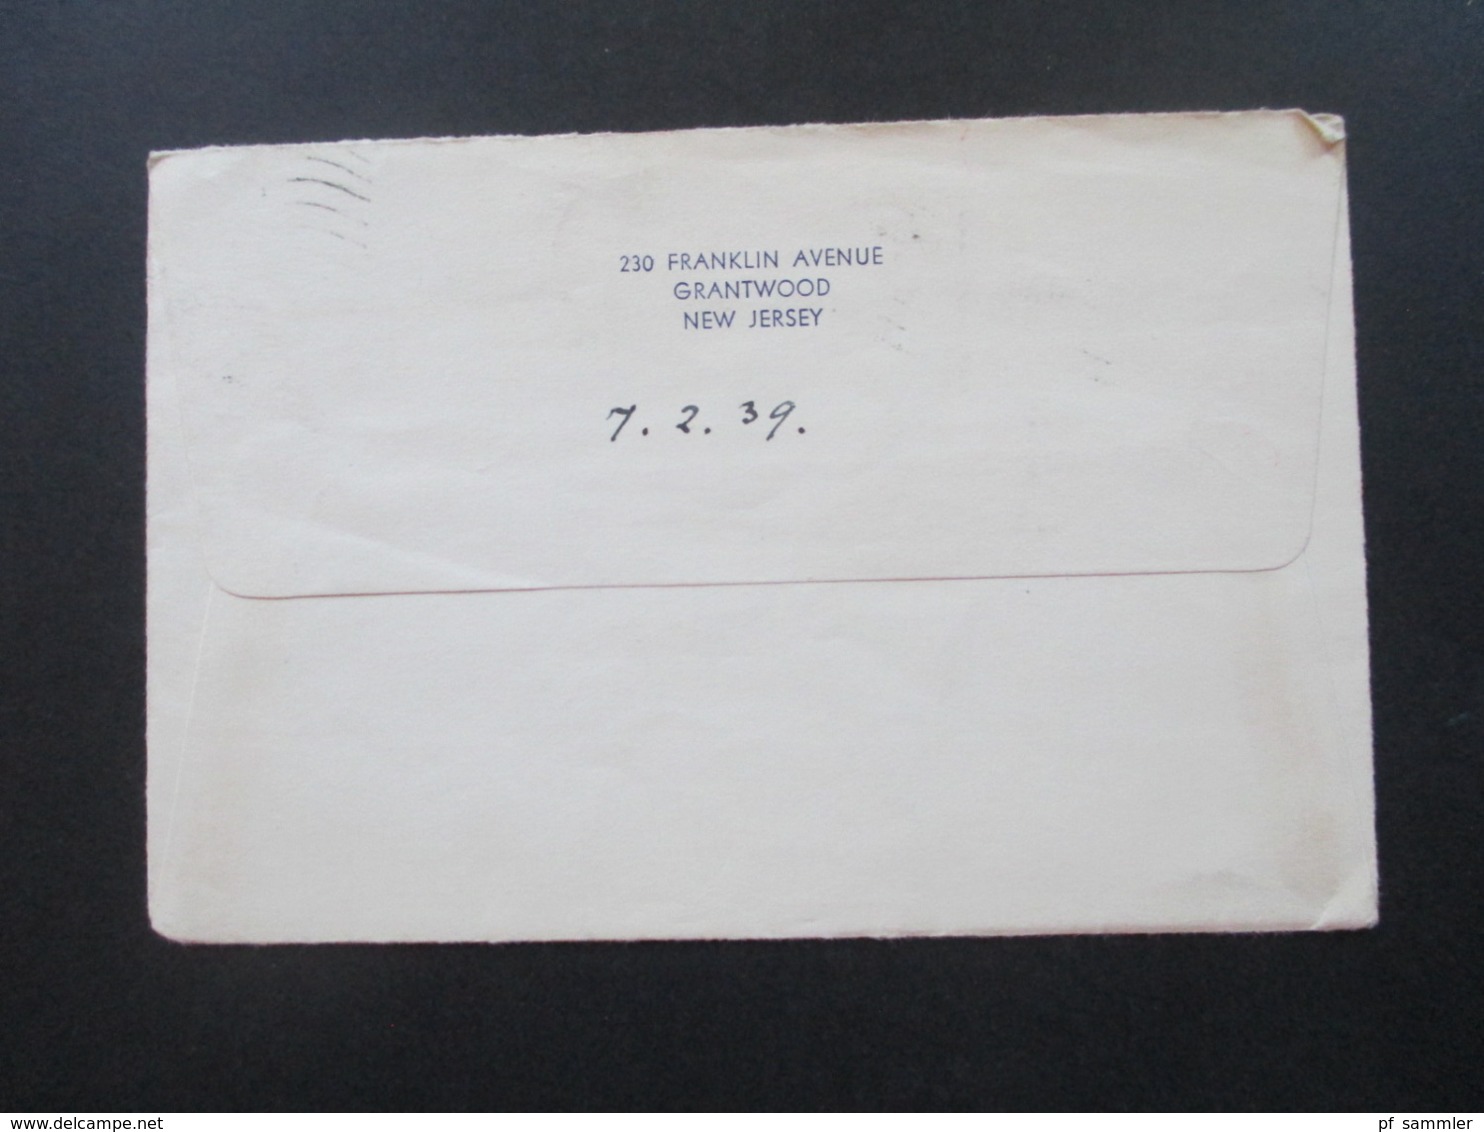 USA Belegeposten mit 59 Stk. 1887 -1939 Social Philately Dr. Oskar Bolza Mathematiker Korrespondenz GA mit Zusatzfrankat